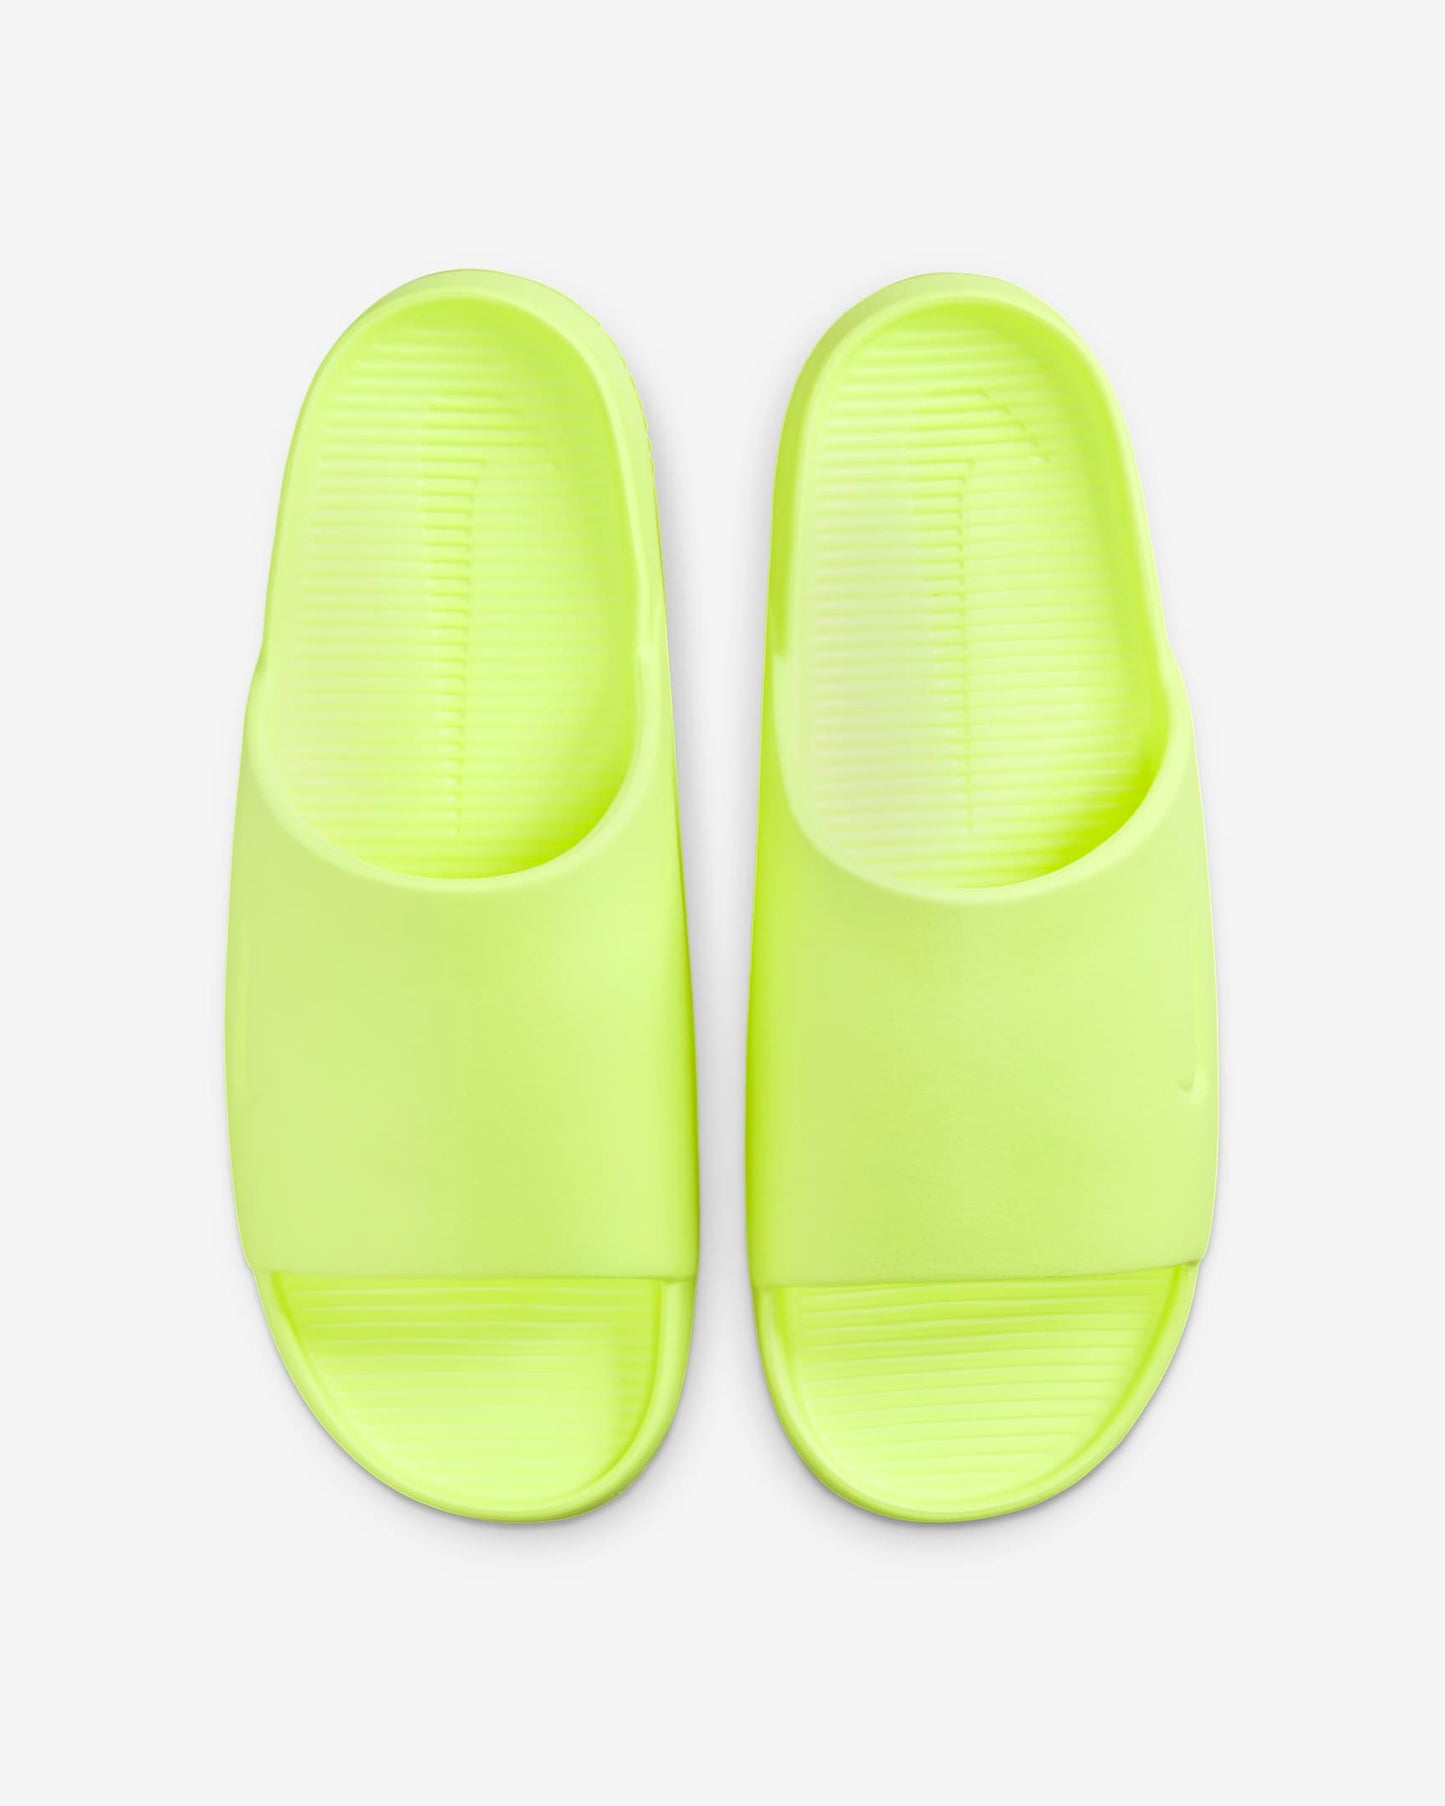 Nike Calm                             Men's Slides